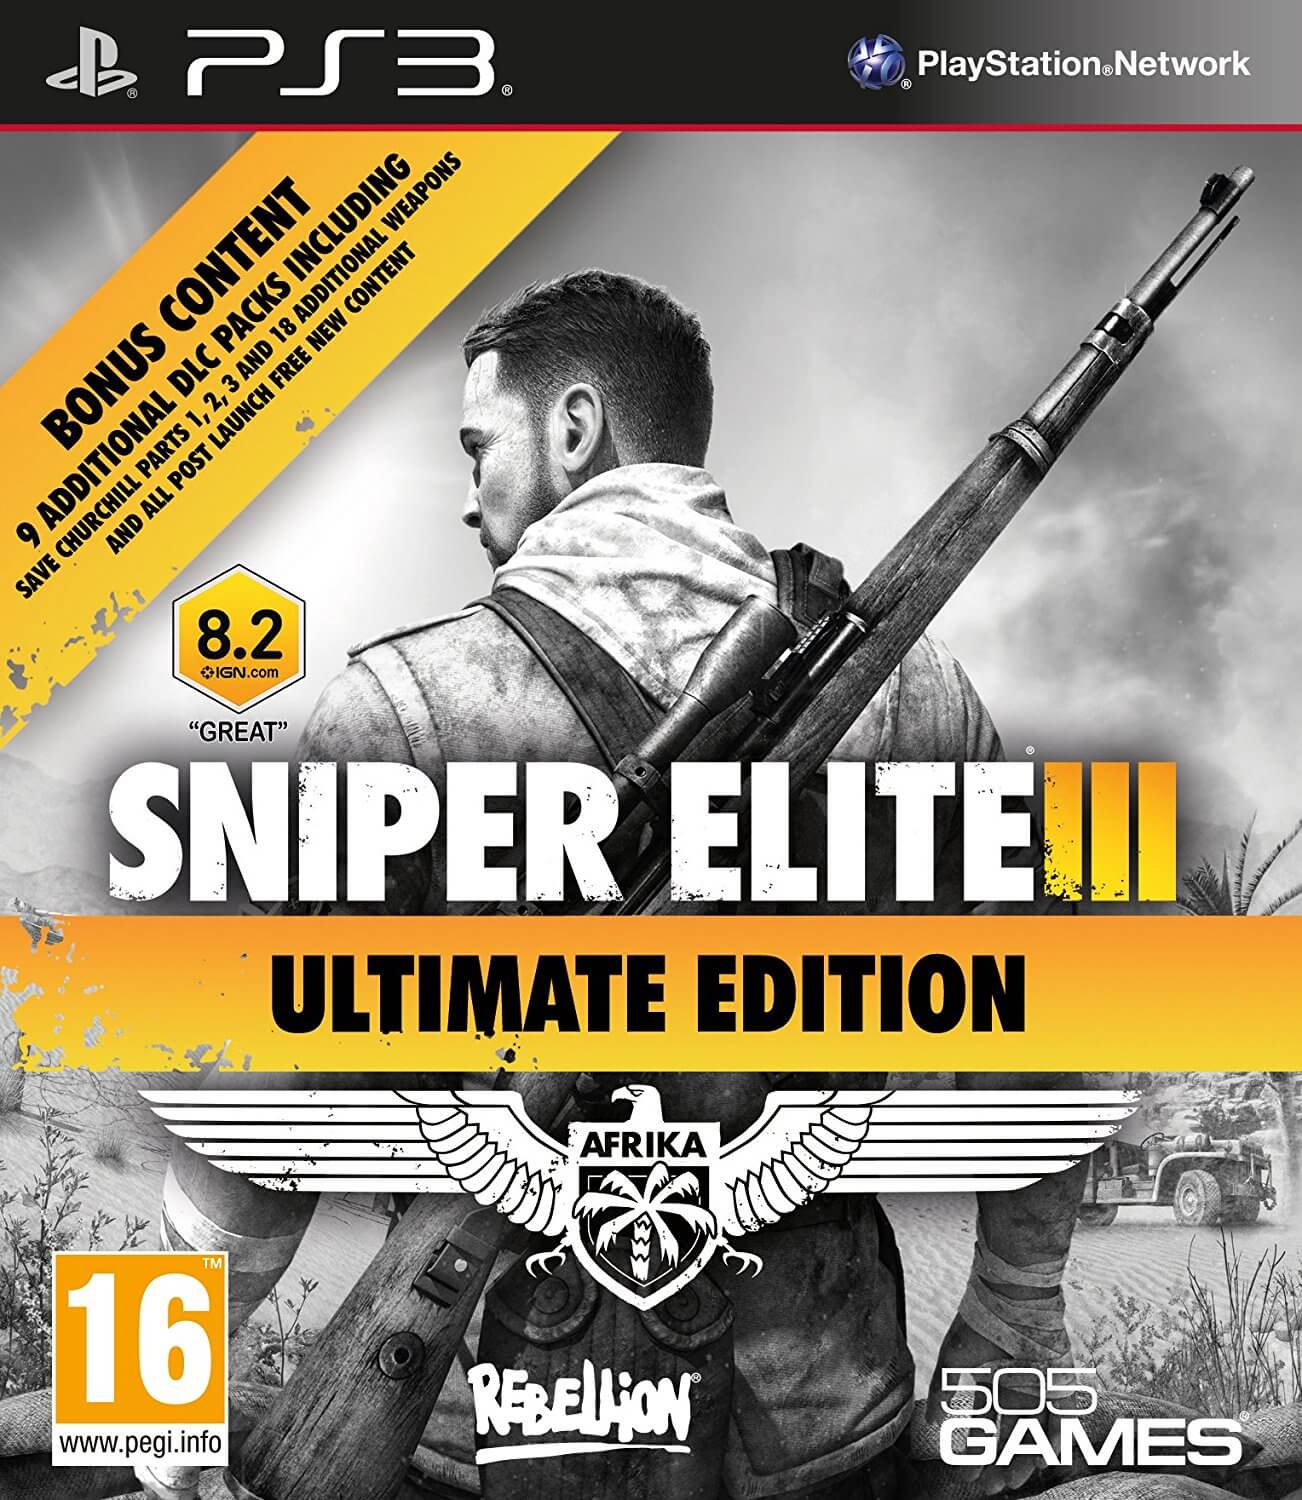 Sniper elite 3 ps3 cheats